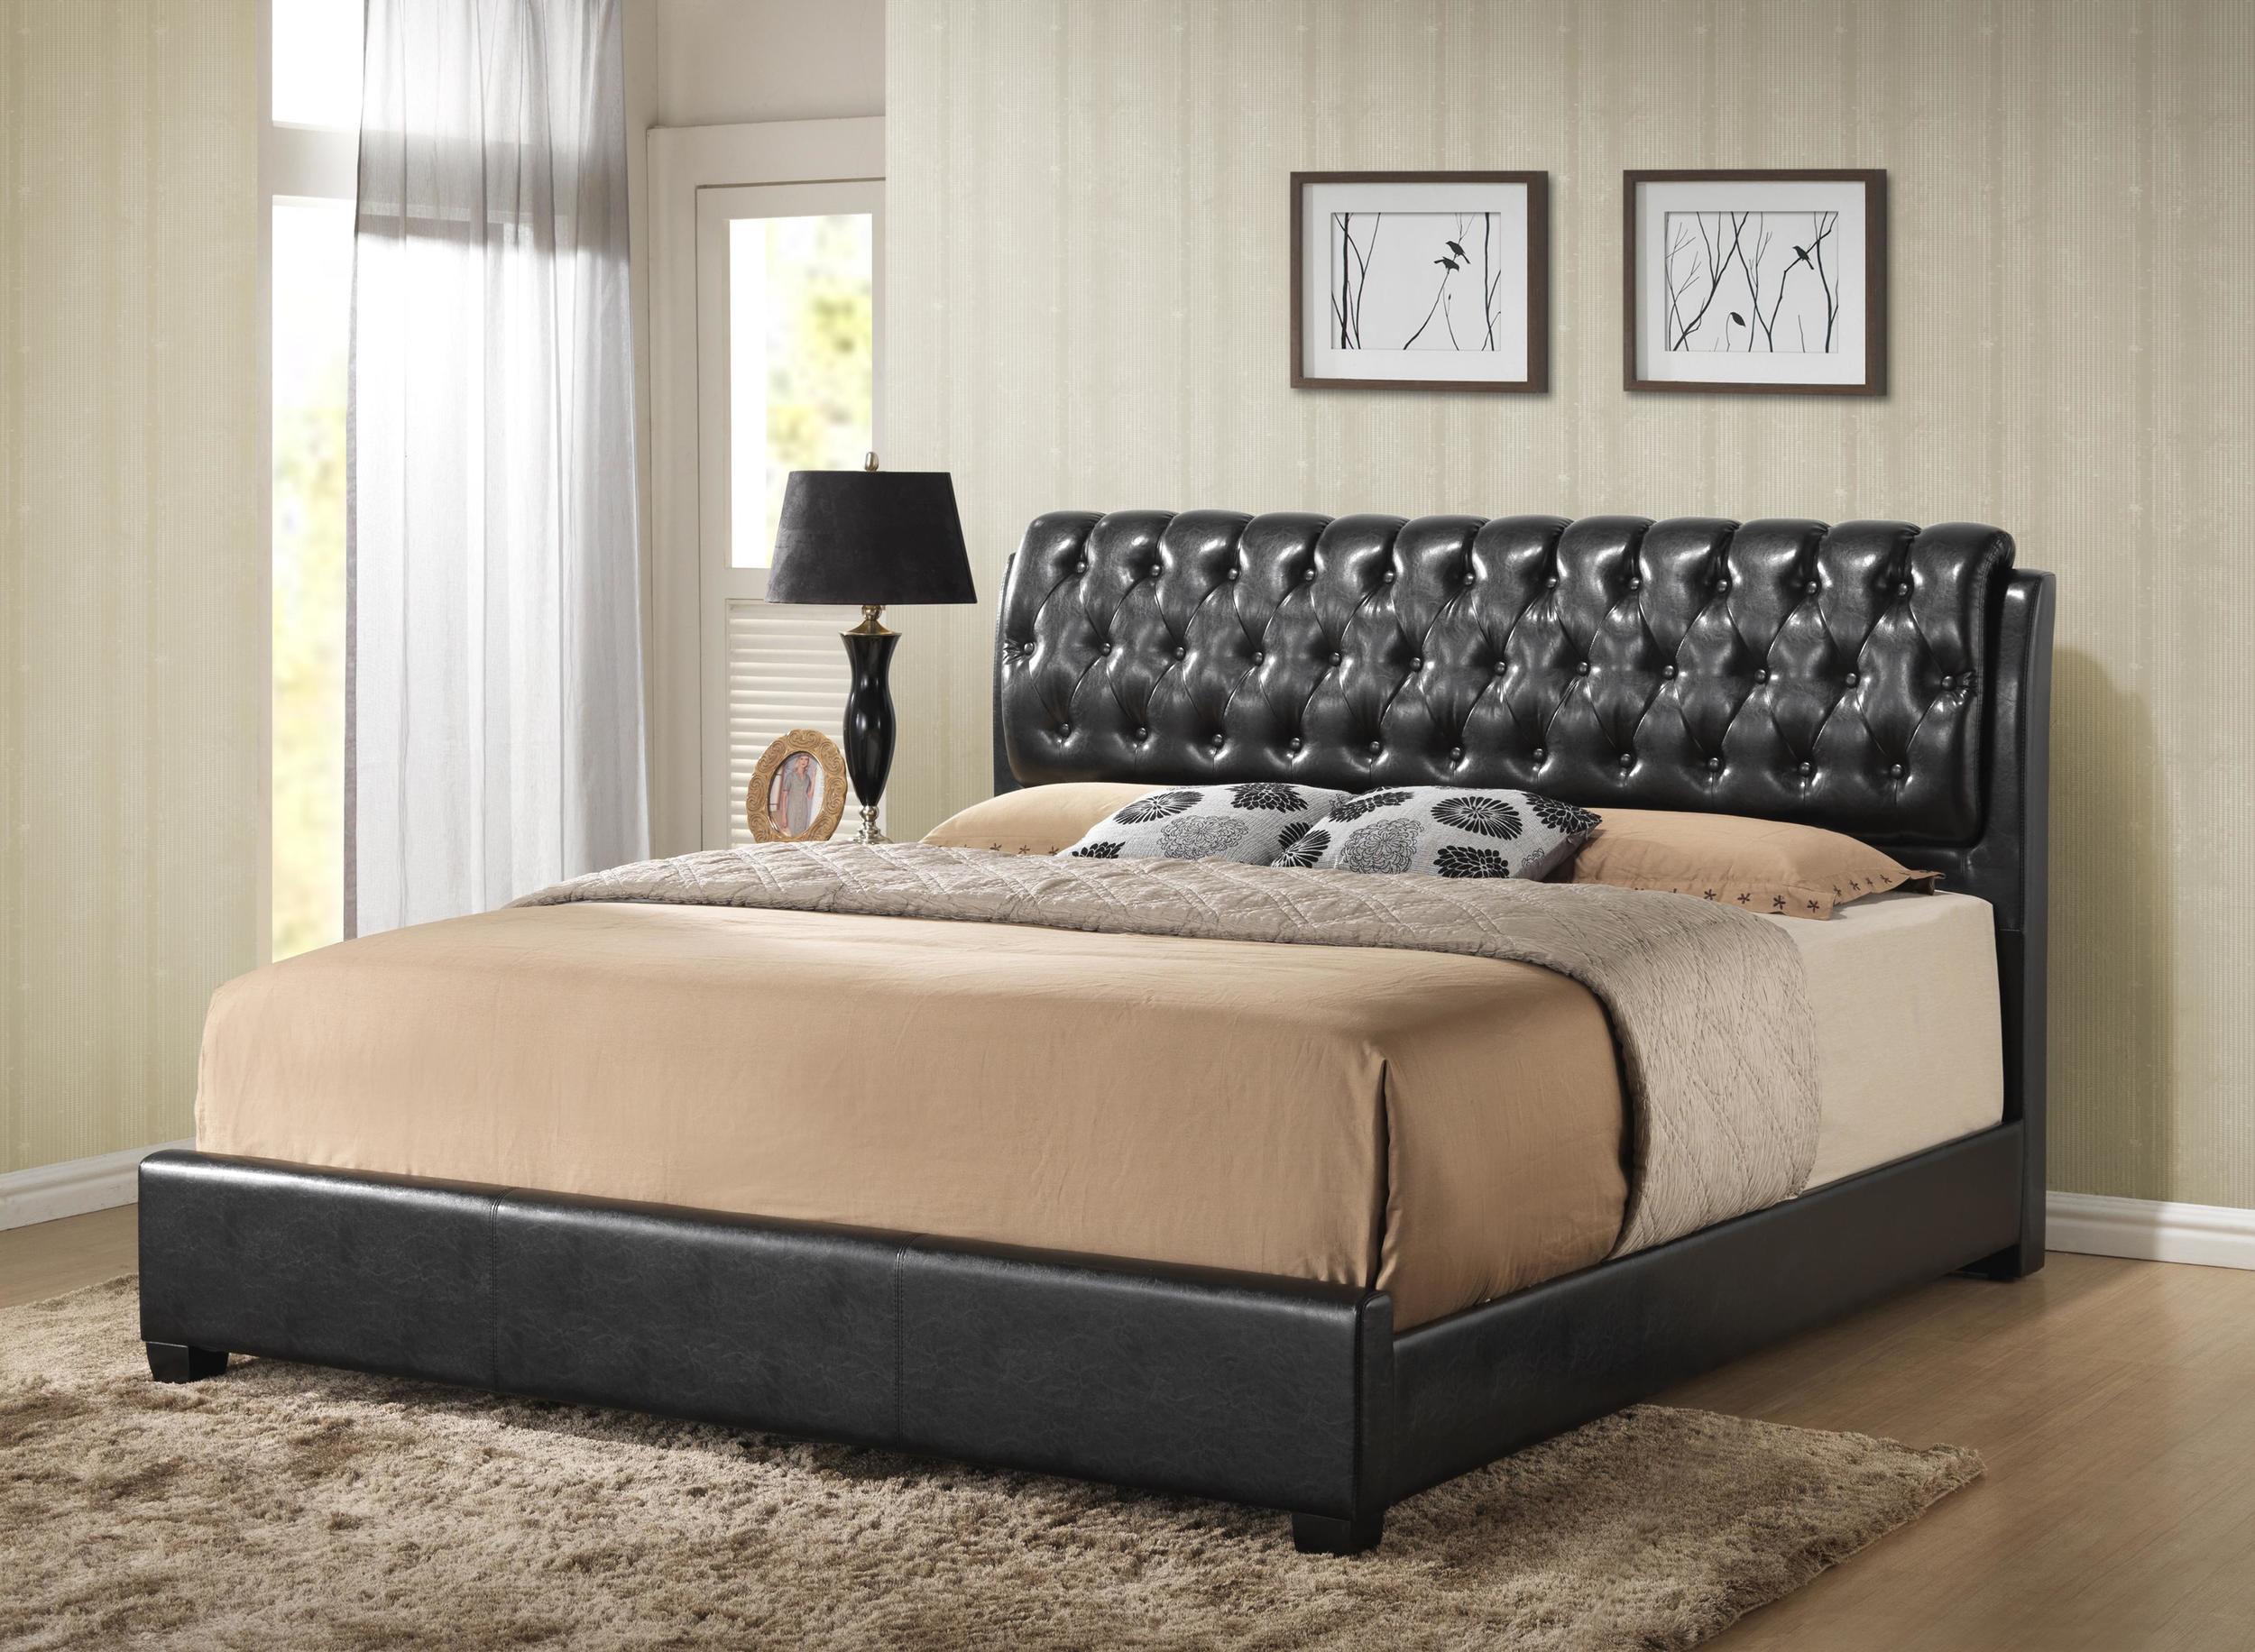 

    
MYCO Furniture 2956K-BK Barnes Black Faux Leather Platform Bed King Size
